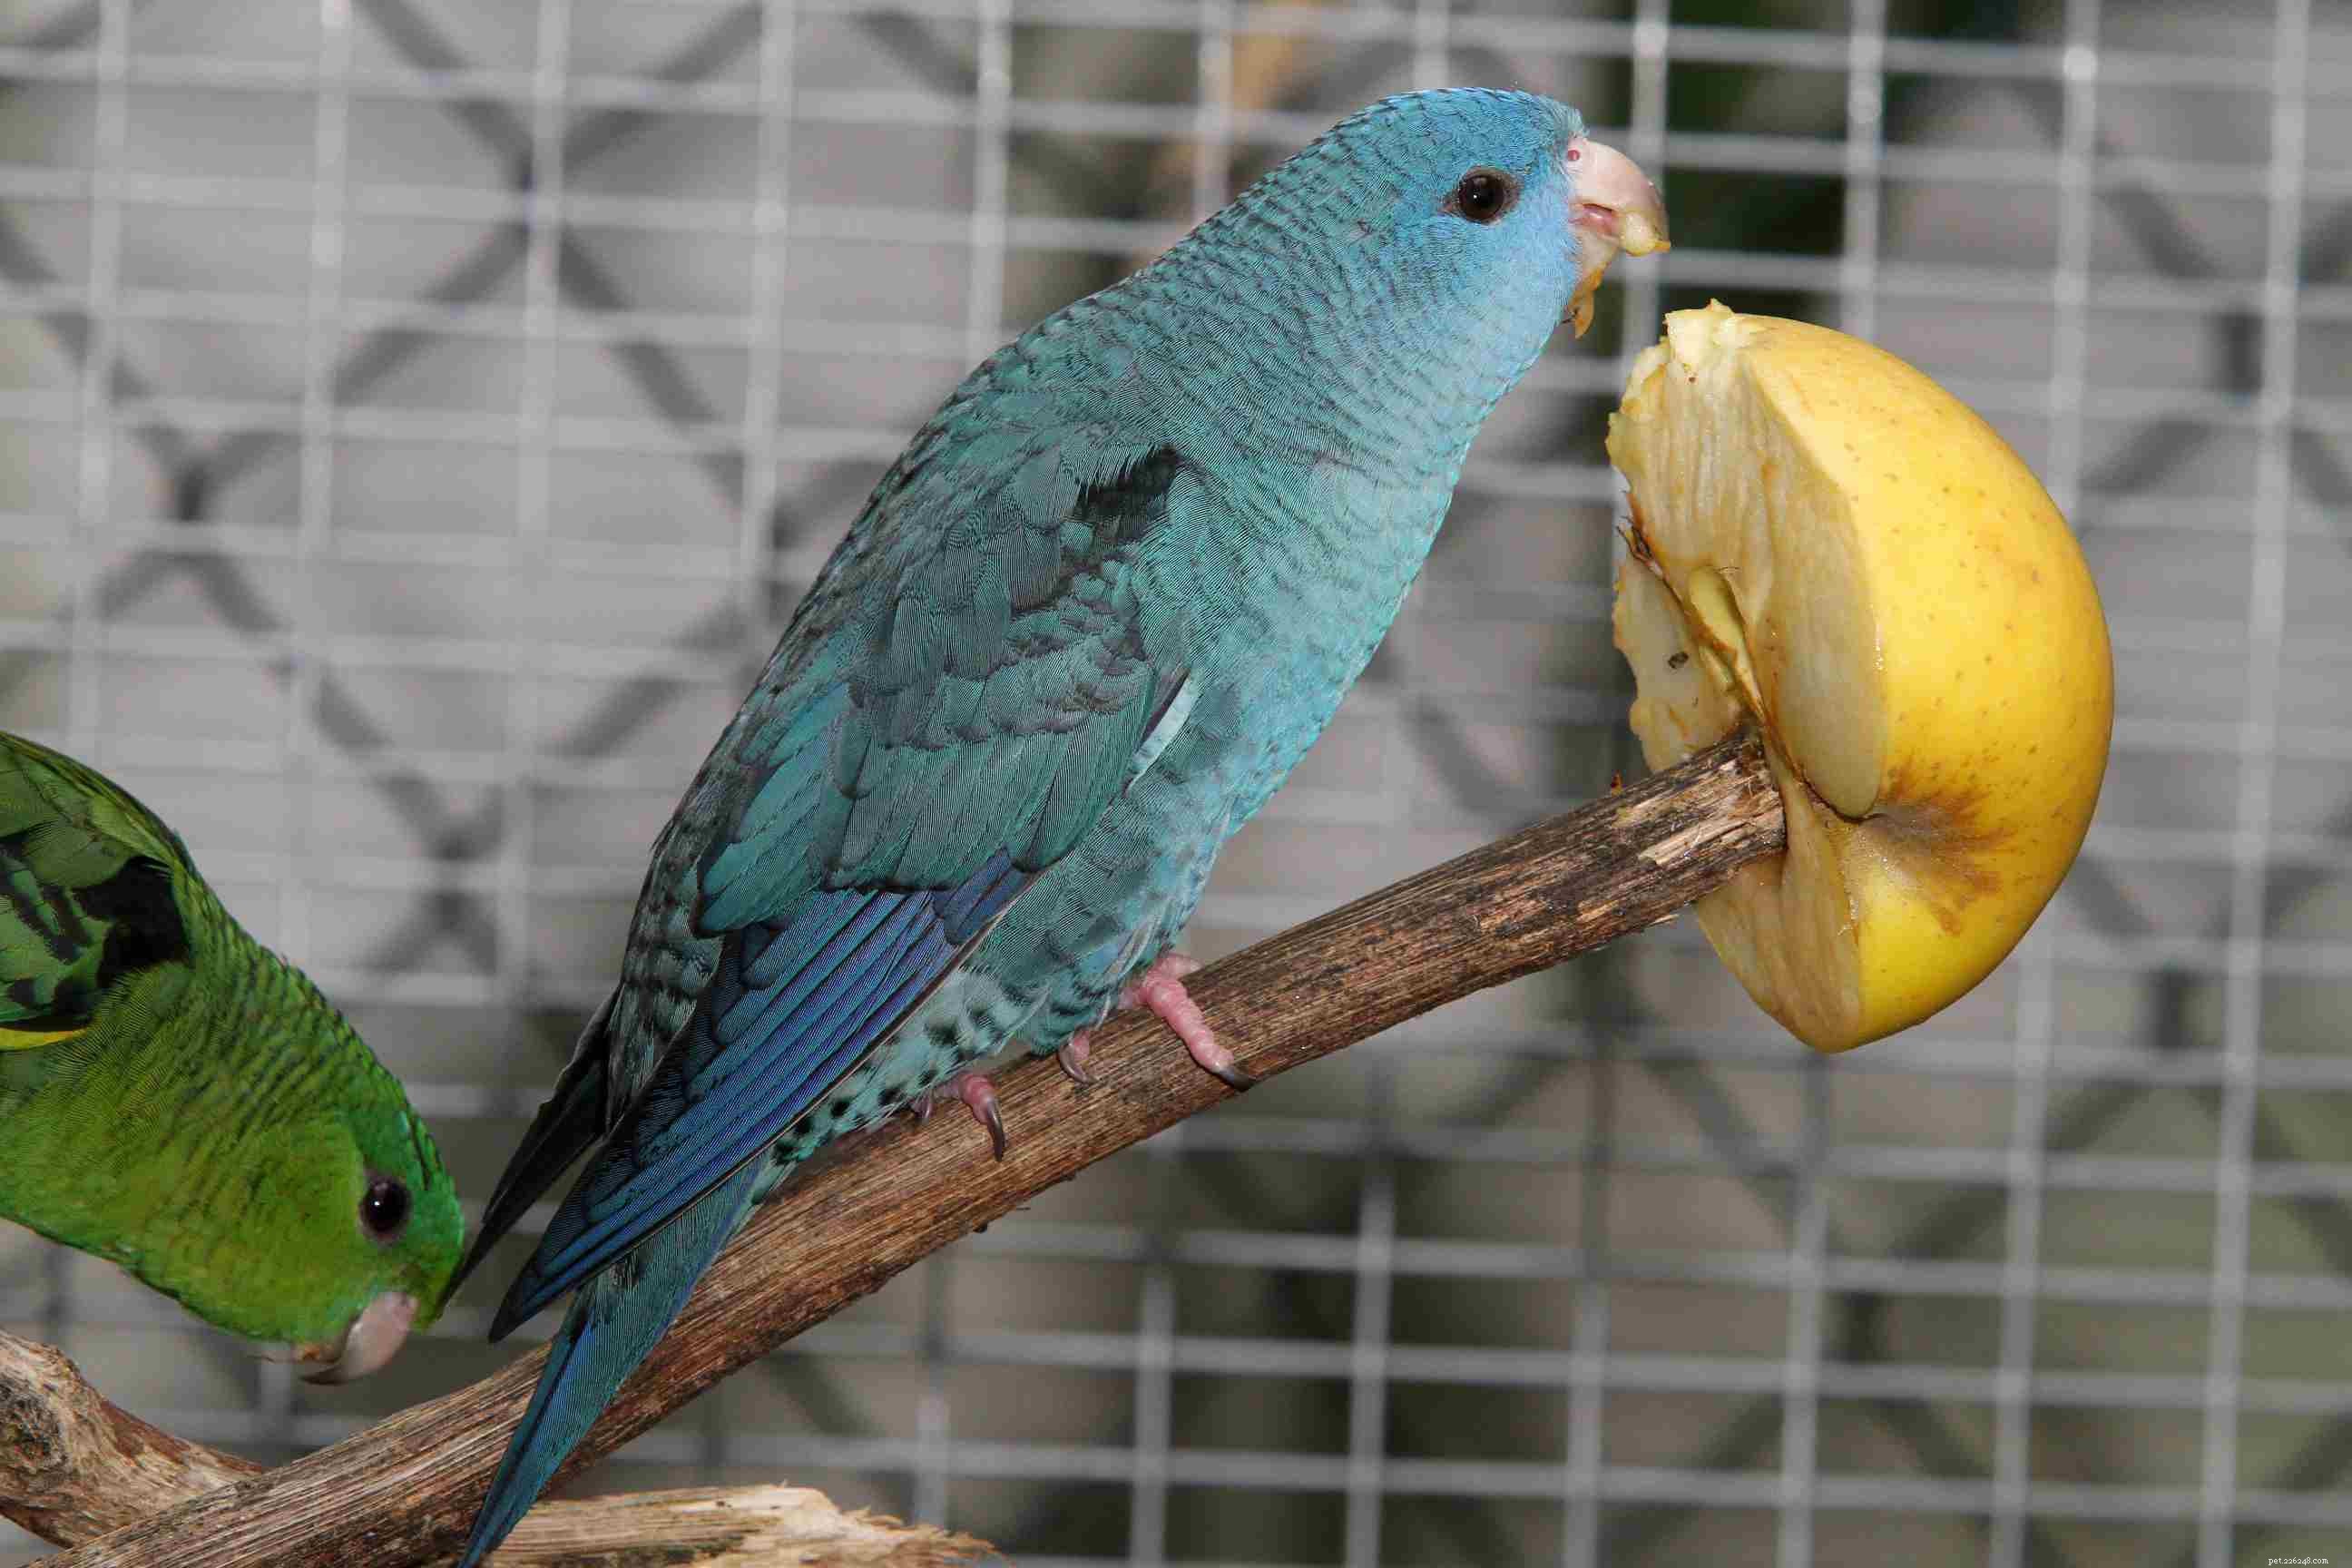 Färgmutationer hos papegojor och andra fåglar